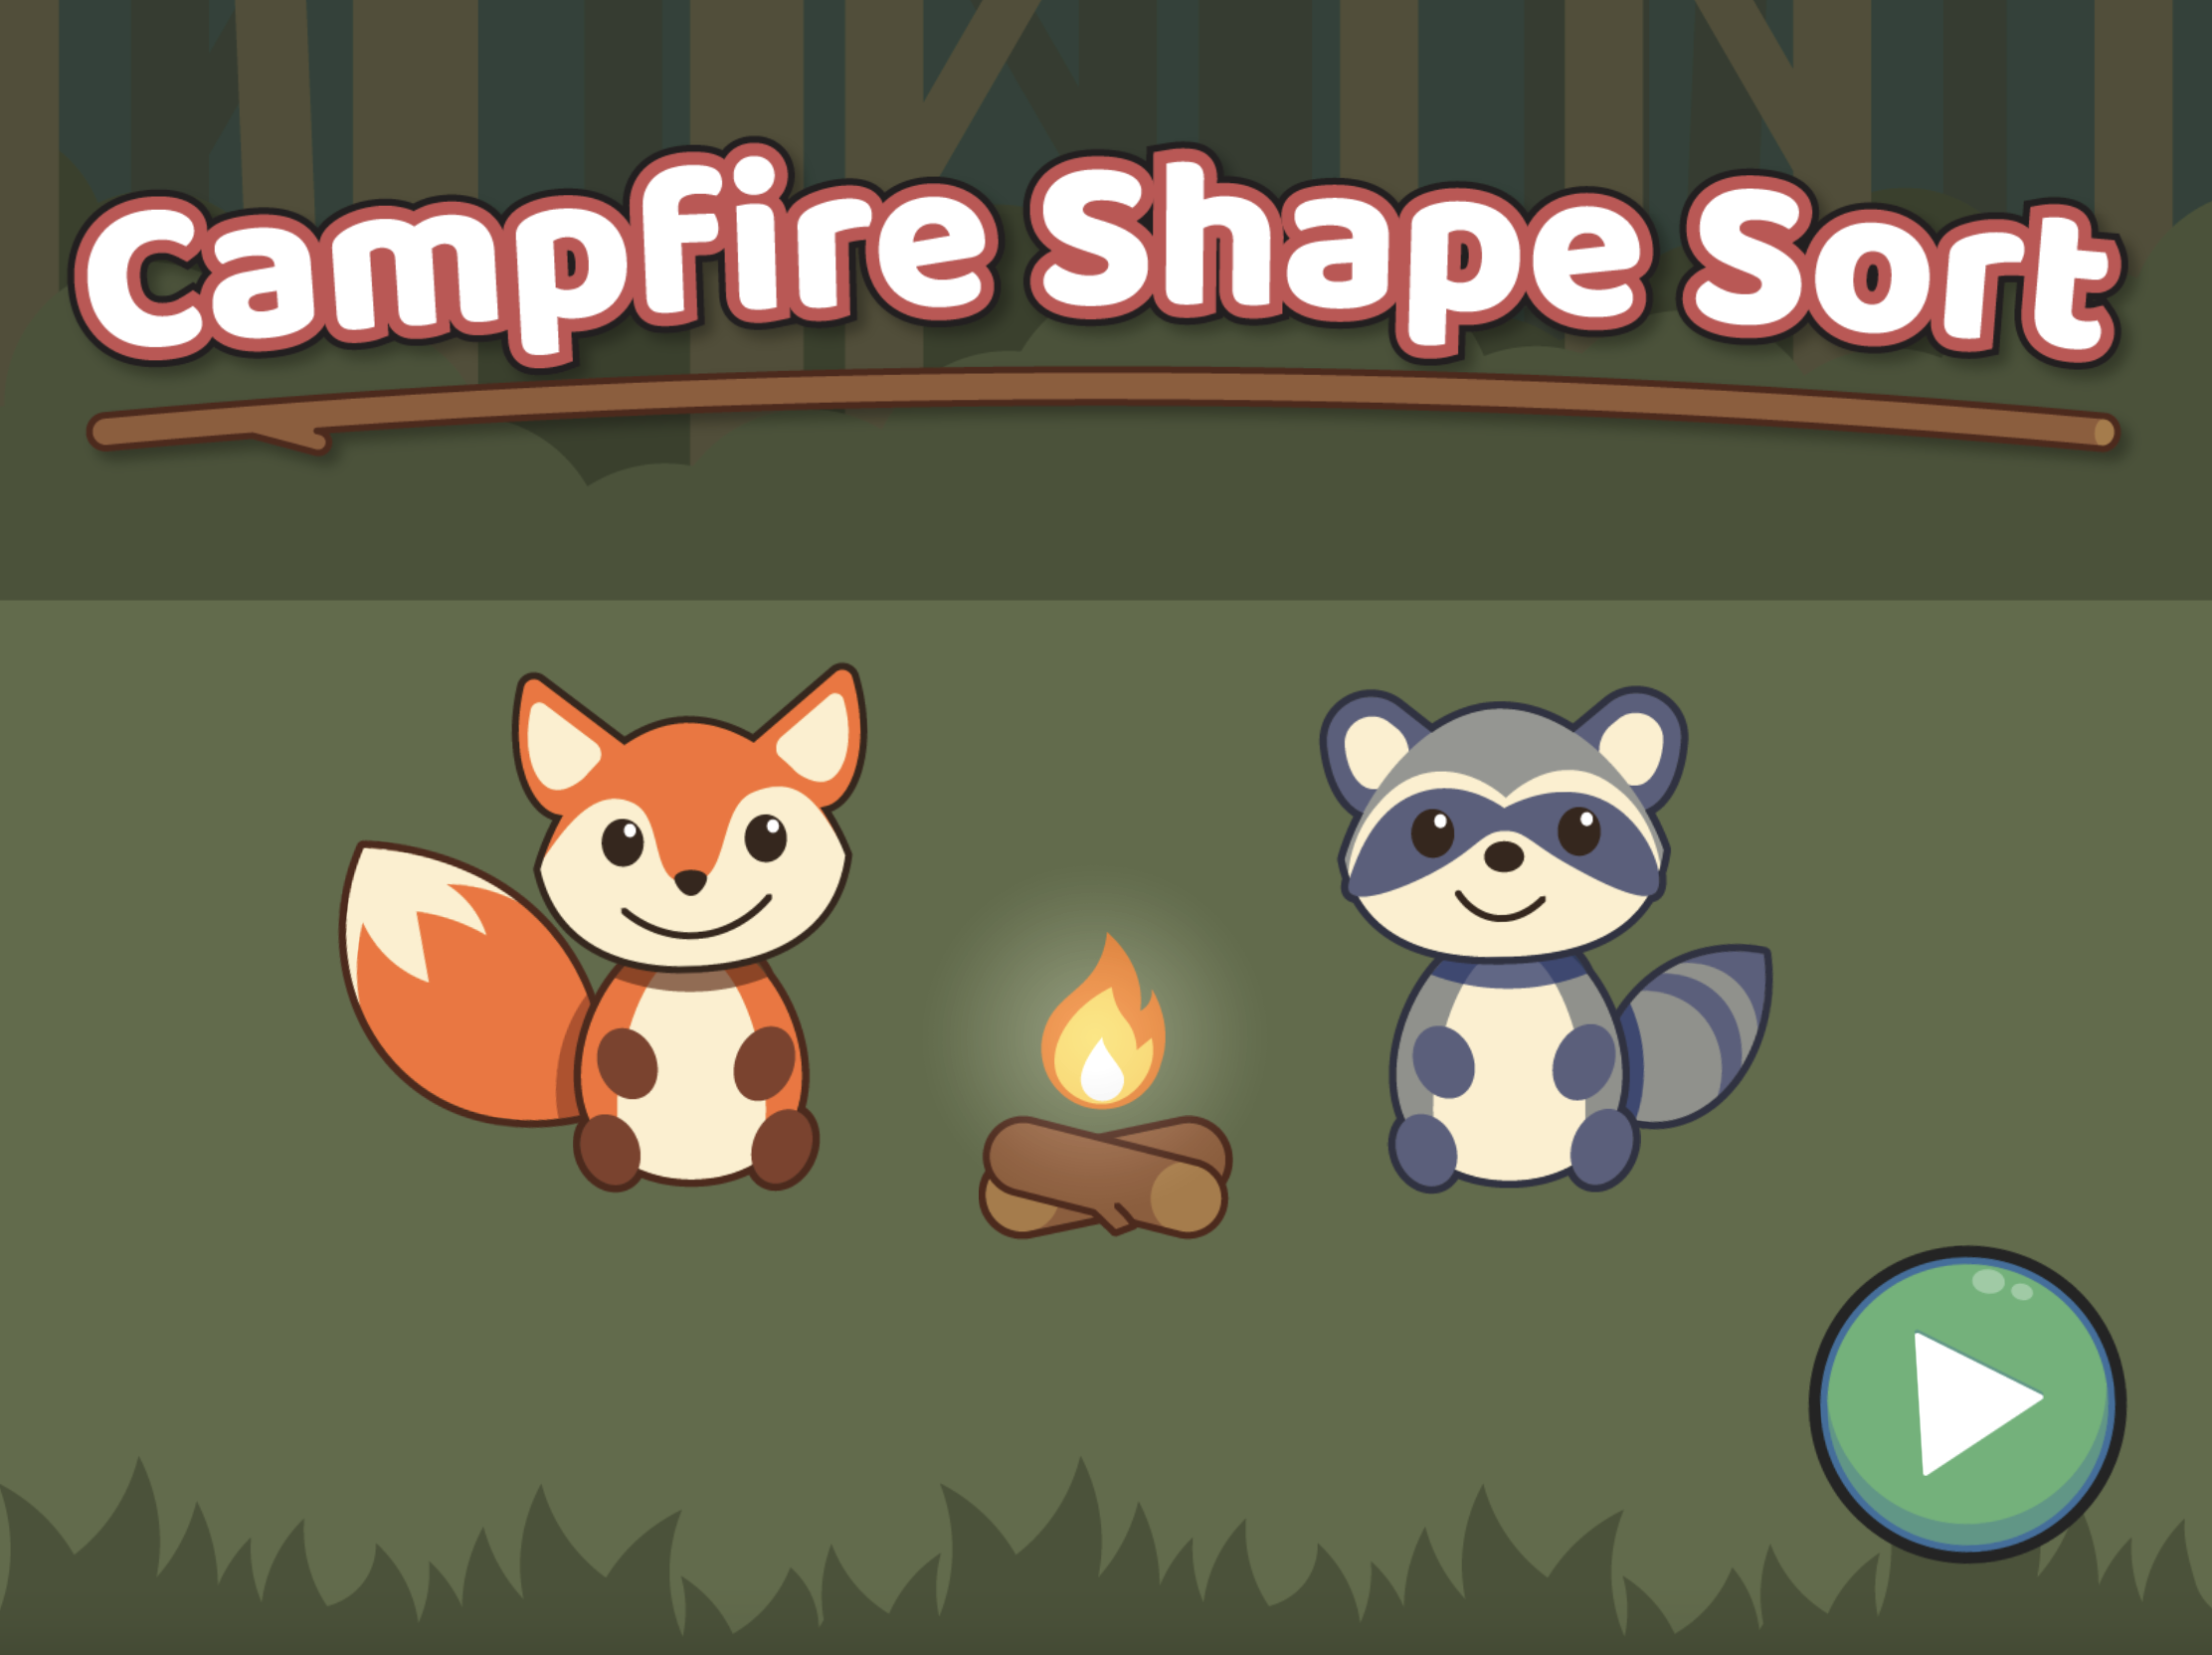 Campfire shape sort game